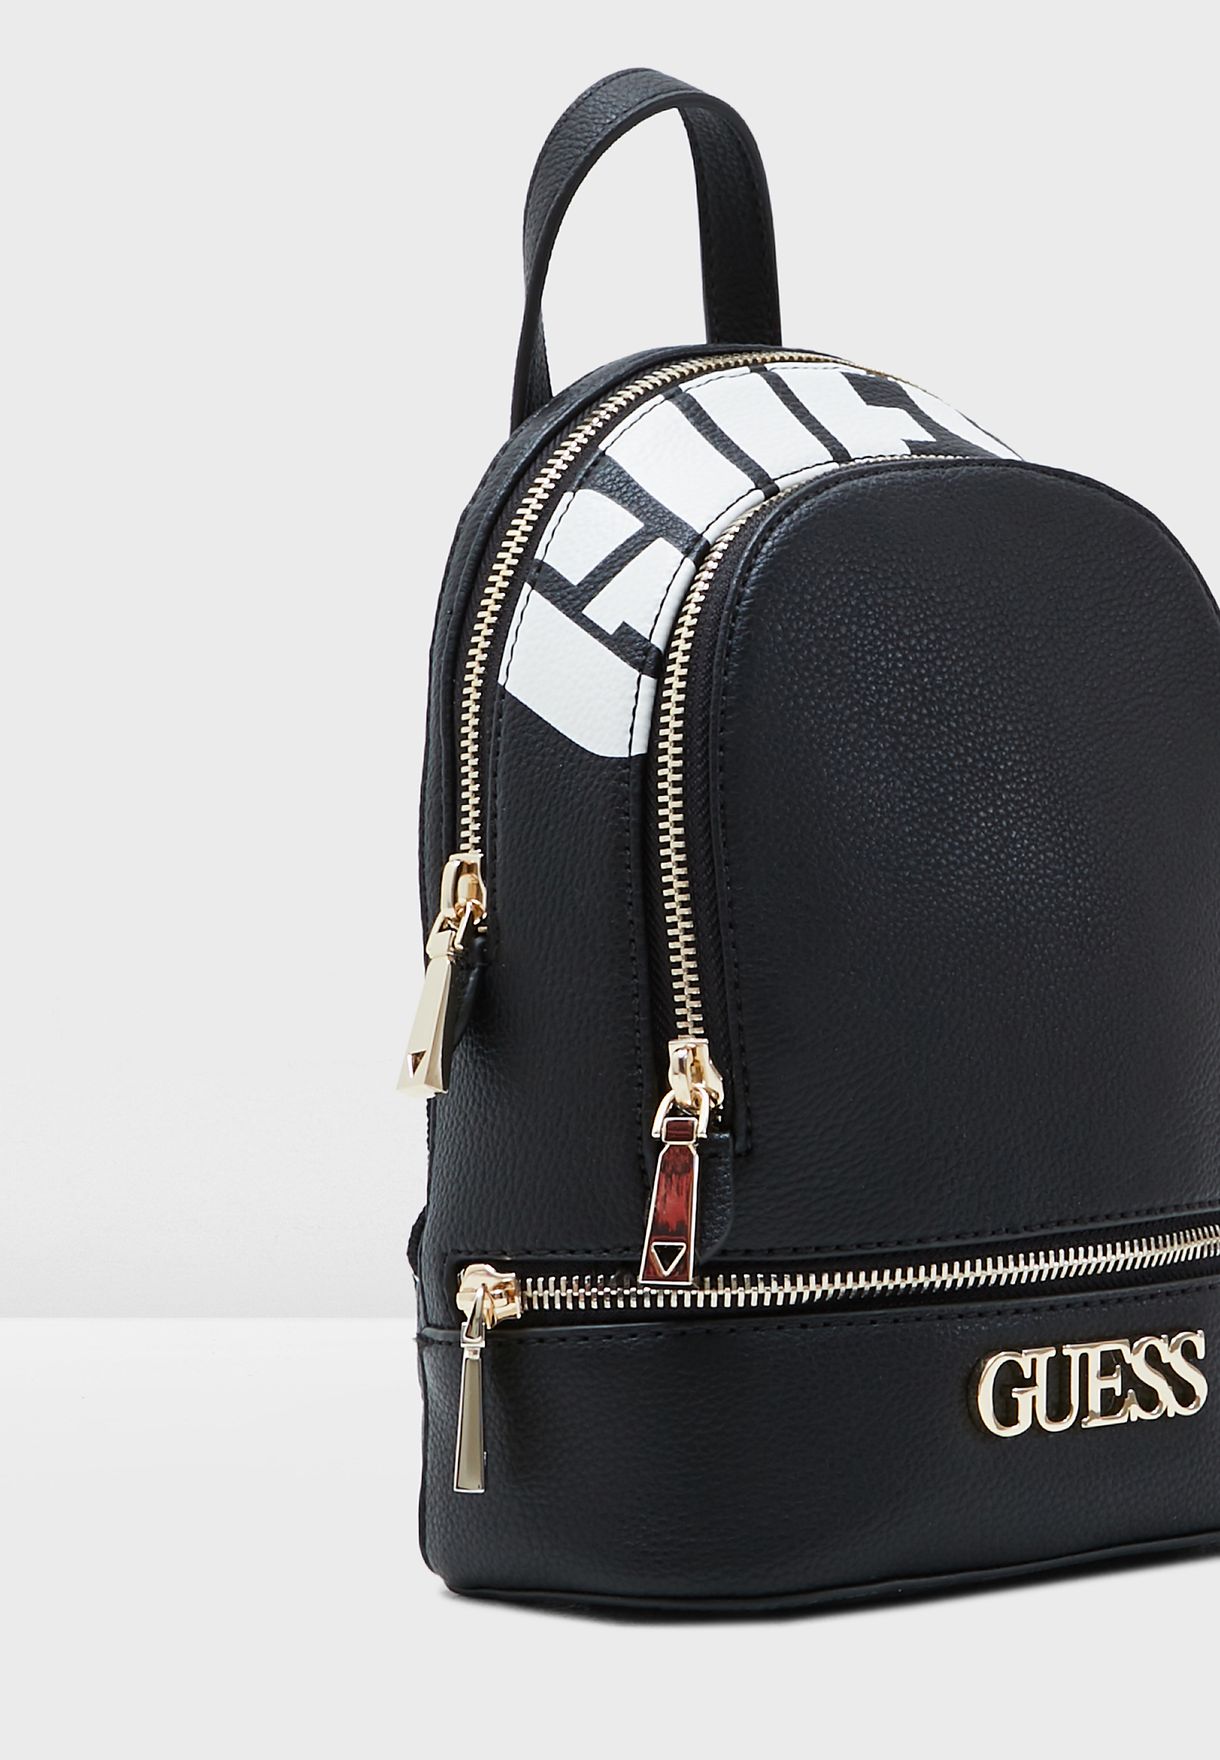 المغمورة نية حسنة أنا سعيد  Buy Guess black Skye Backpack for Women in MENA, Worldwide